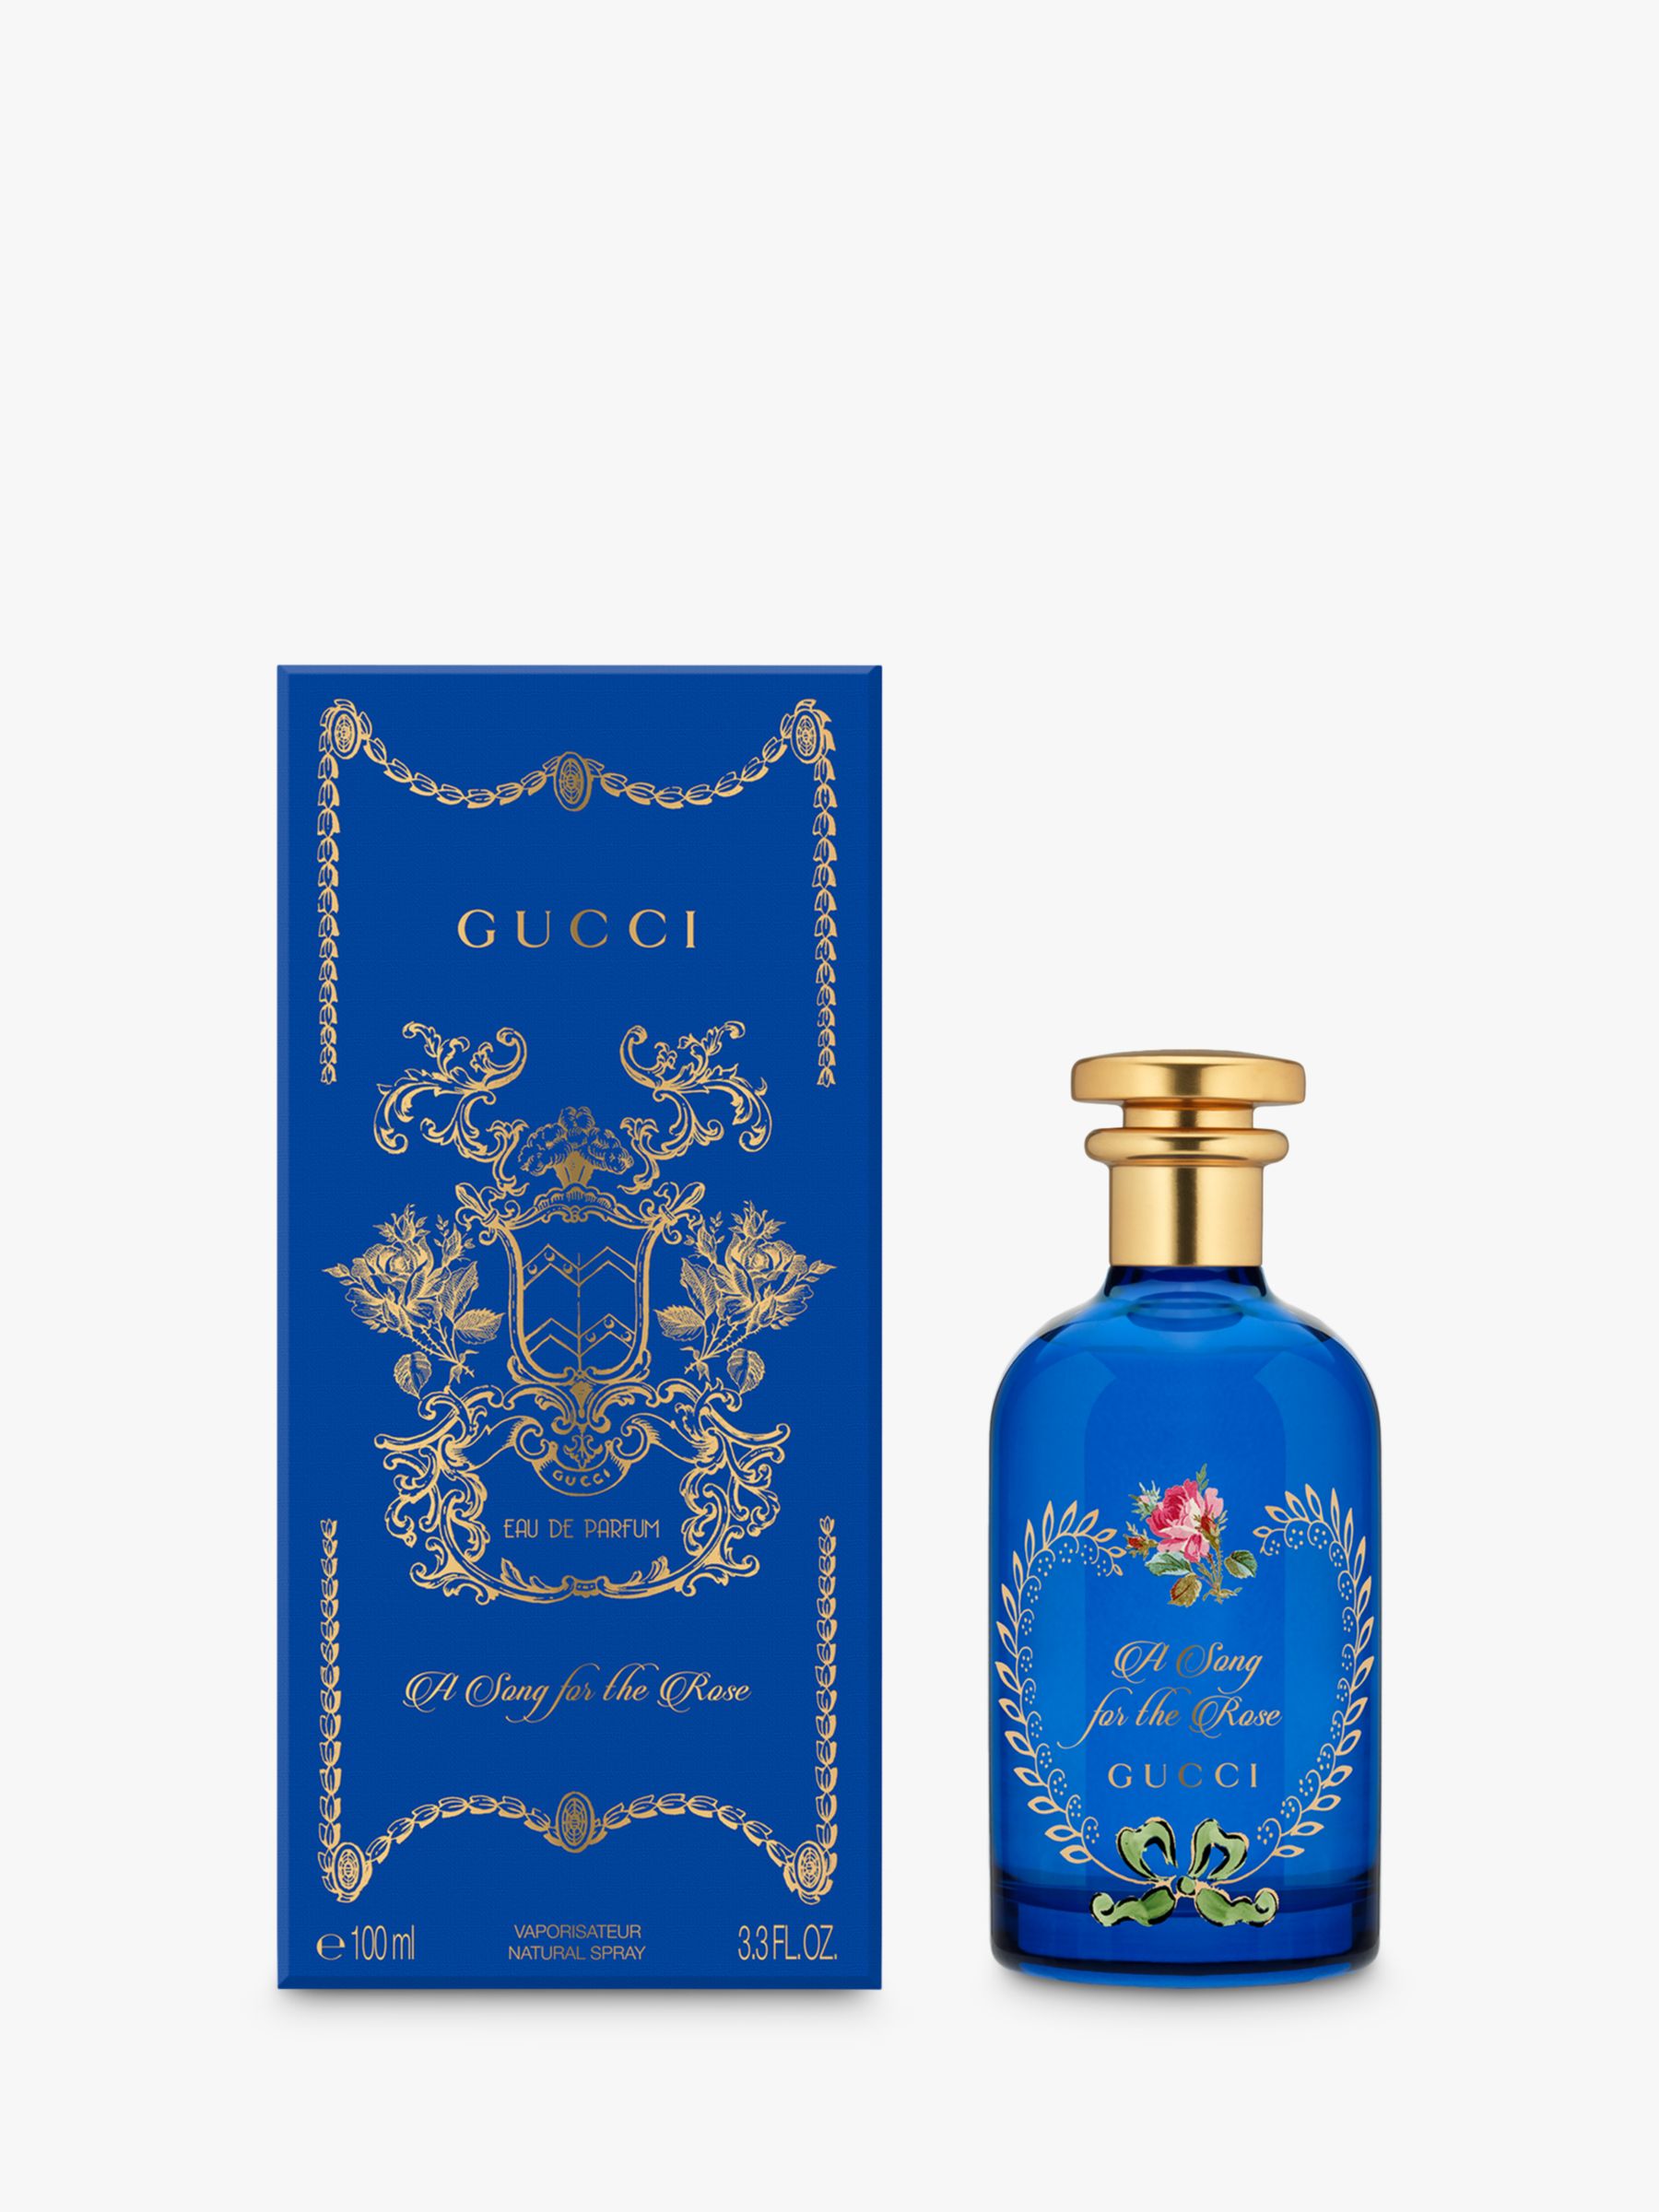 Gucci The Alchemist's Garden A Song for the Rose Eau de Parfum, 100ml